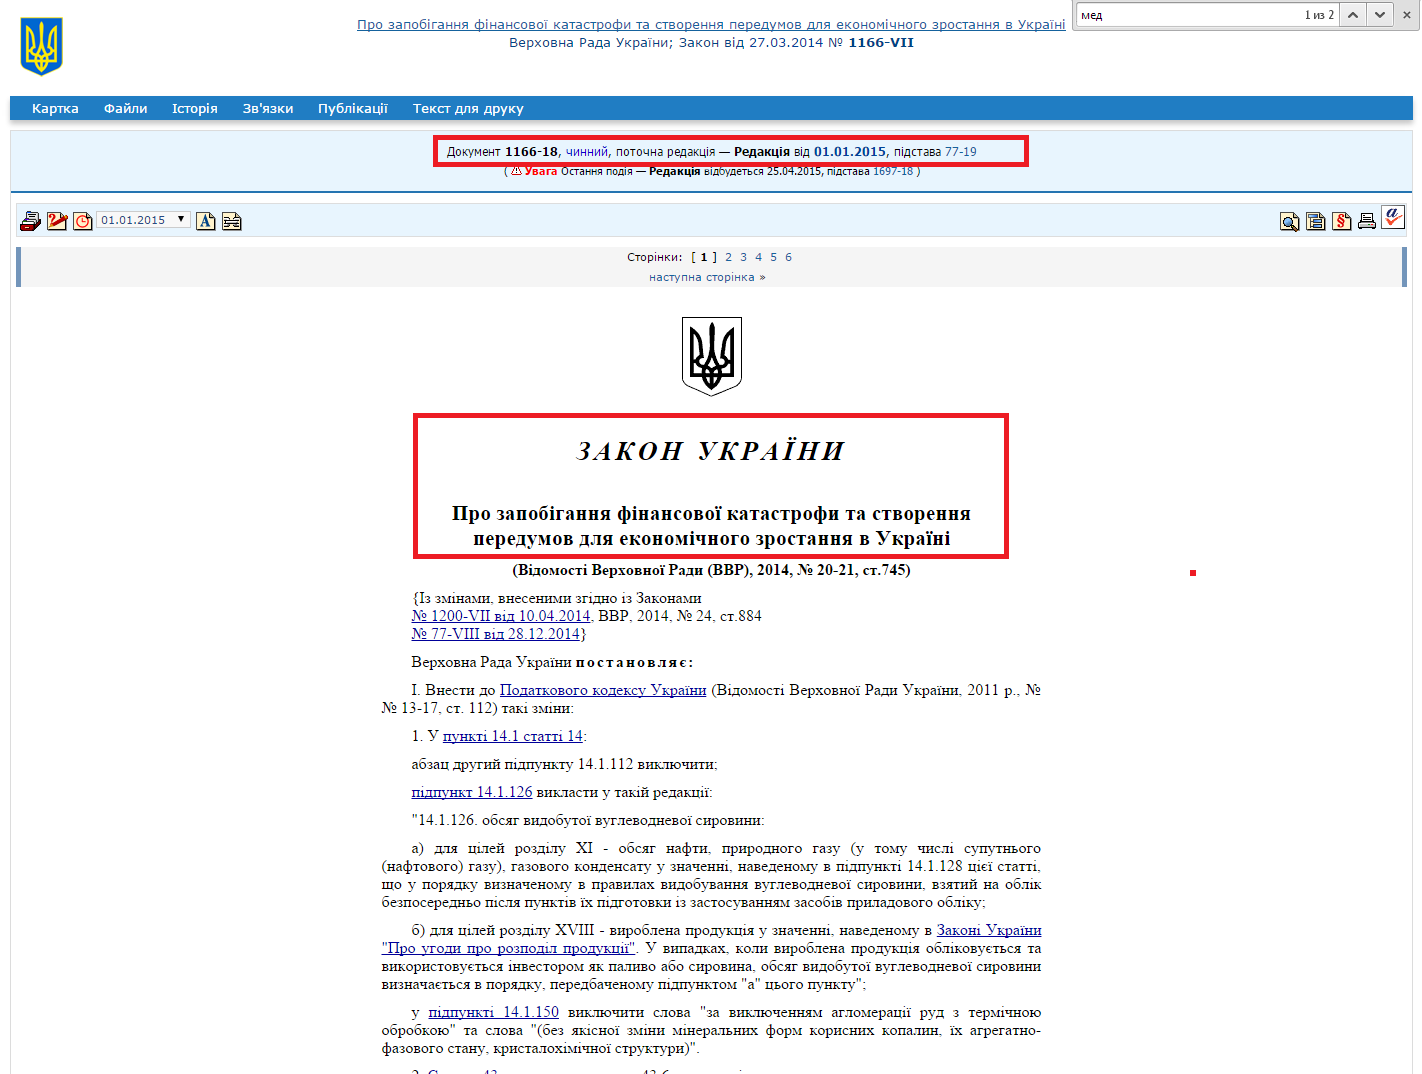 http://zakon4.rada.gov.ua/laws/show/1166-18